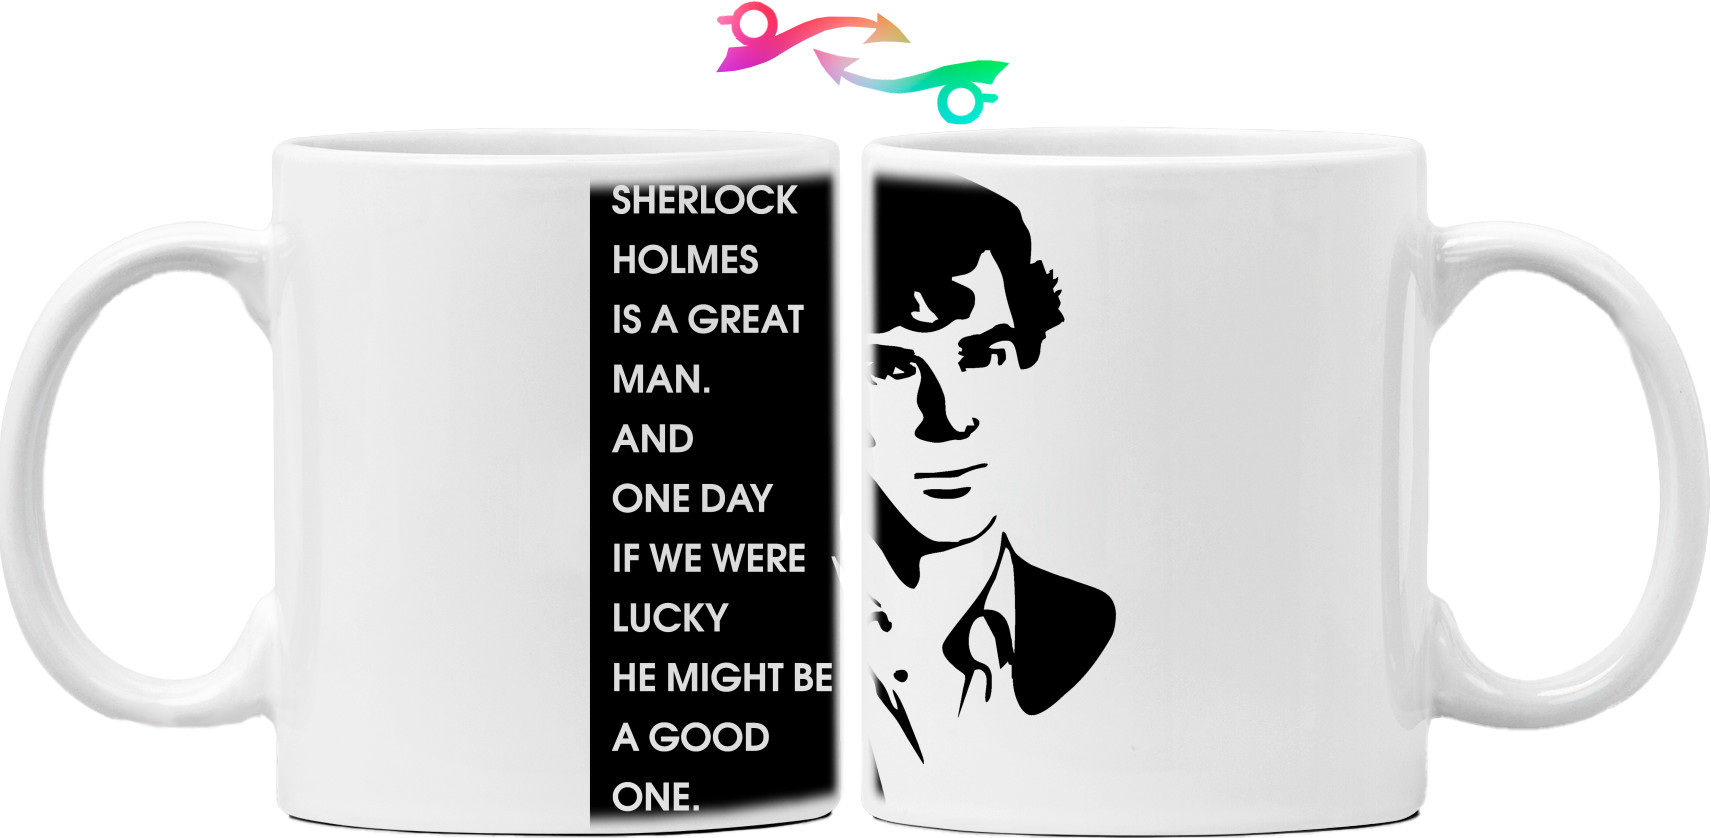 Sherlock Holmes is a great man